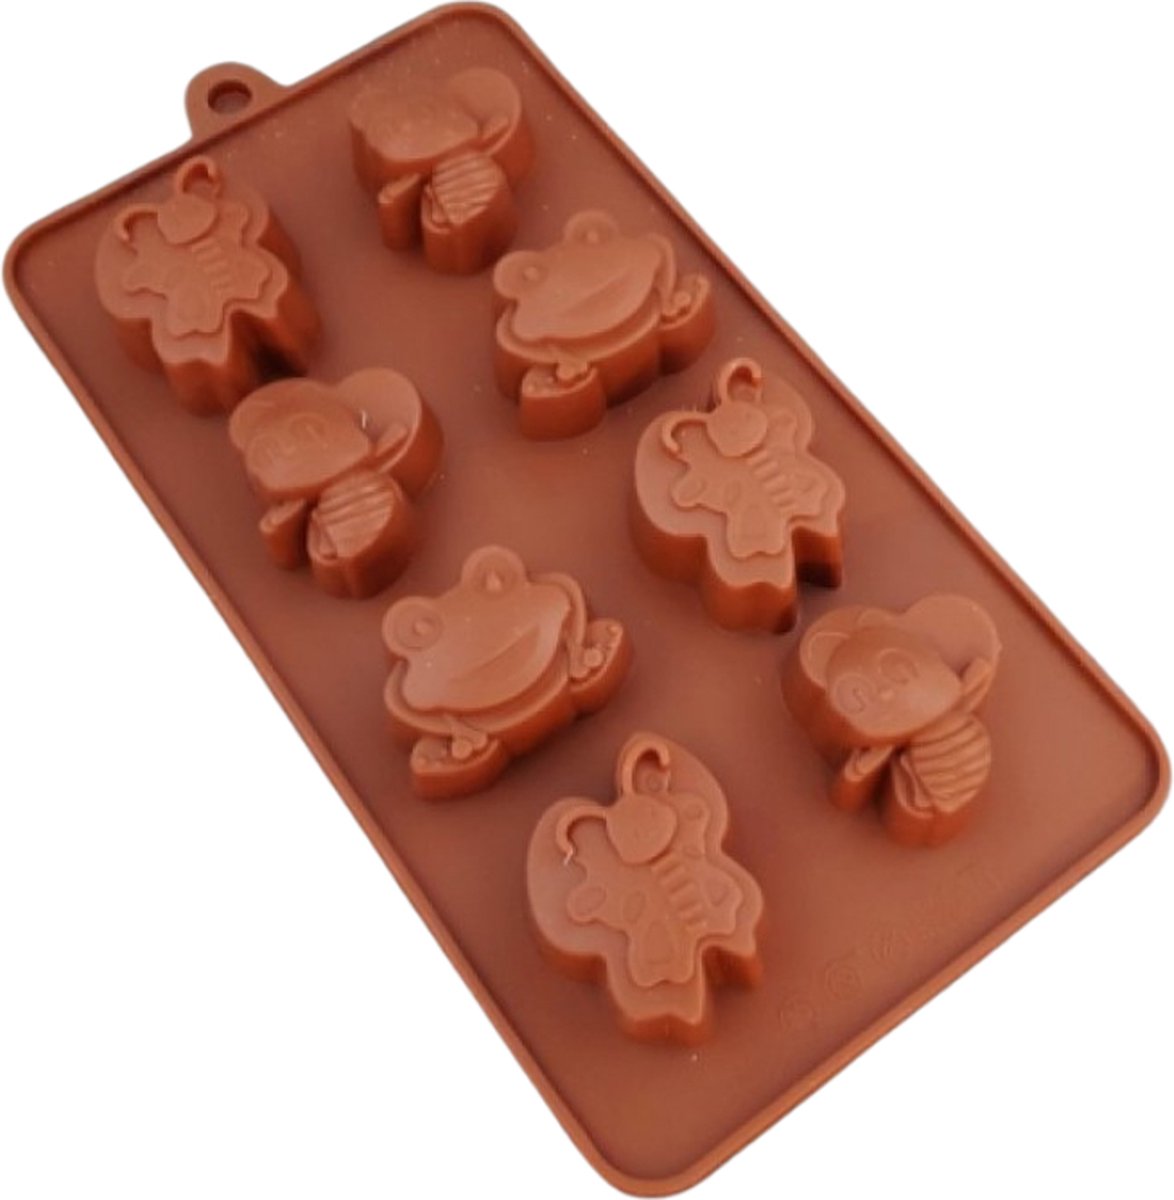 Luxe Siliconen Vlinders - Bijen / Insecten mal voor rozetchocolade 23 x 11 cm - Chocolade vorm - Ruby chocolate (Roze chocolade) - Snoep / Bonbon chique mal - Geschikt voor oven en vaatwasser bestendigd.